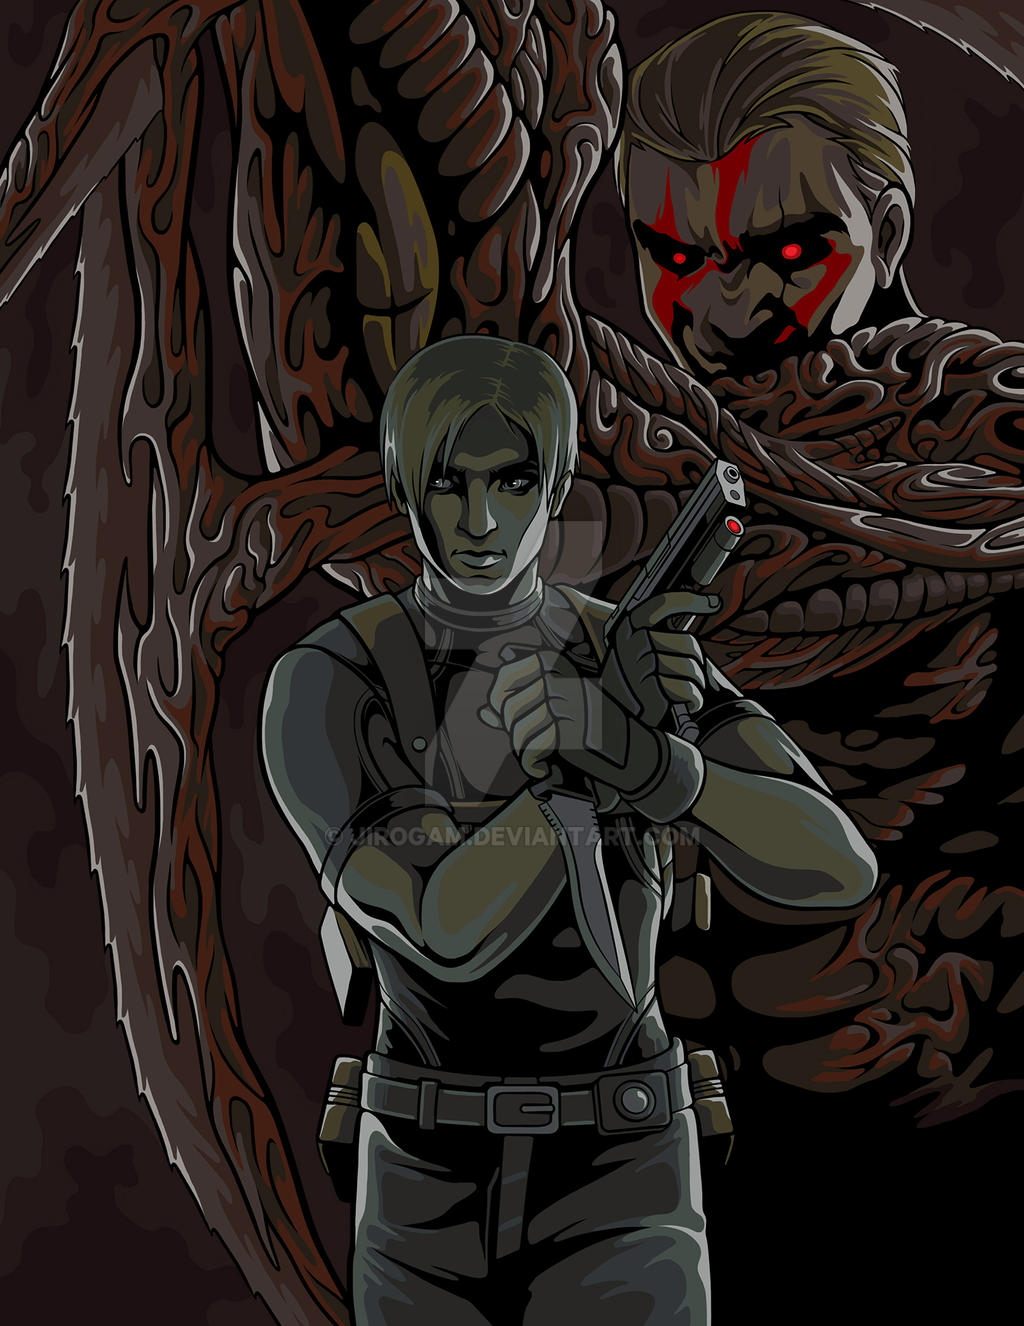 Jack krauser on Resident-evil-men - DeviantArt